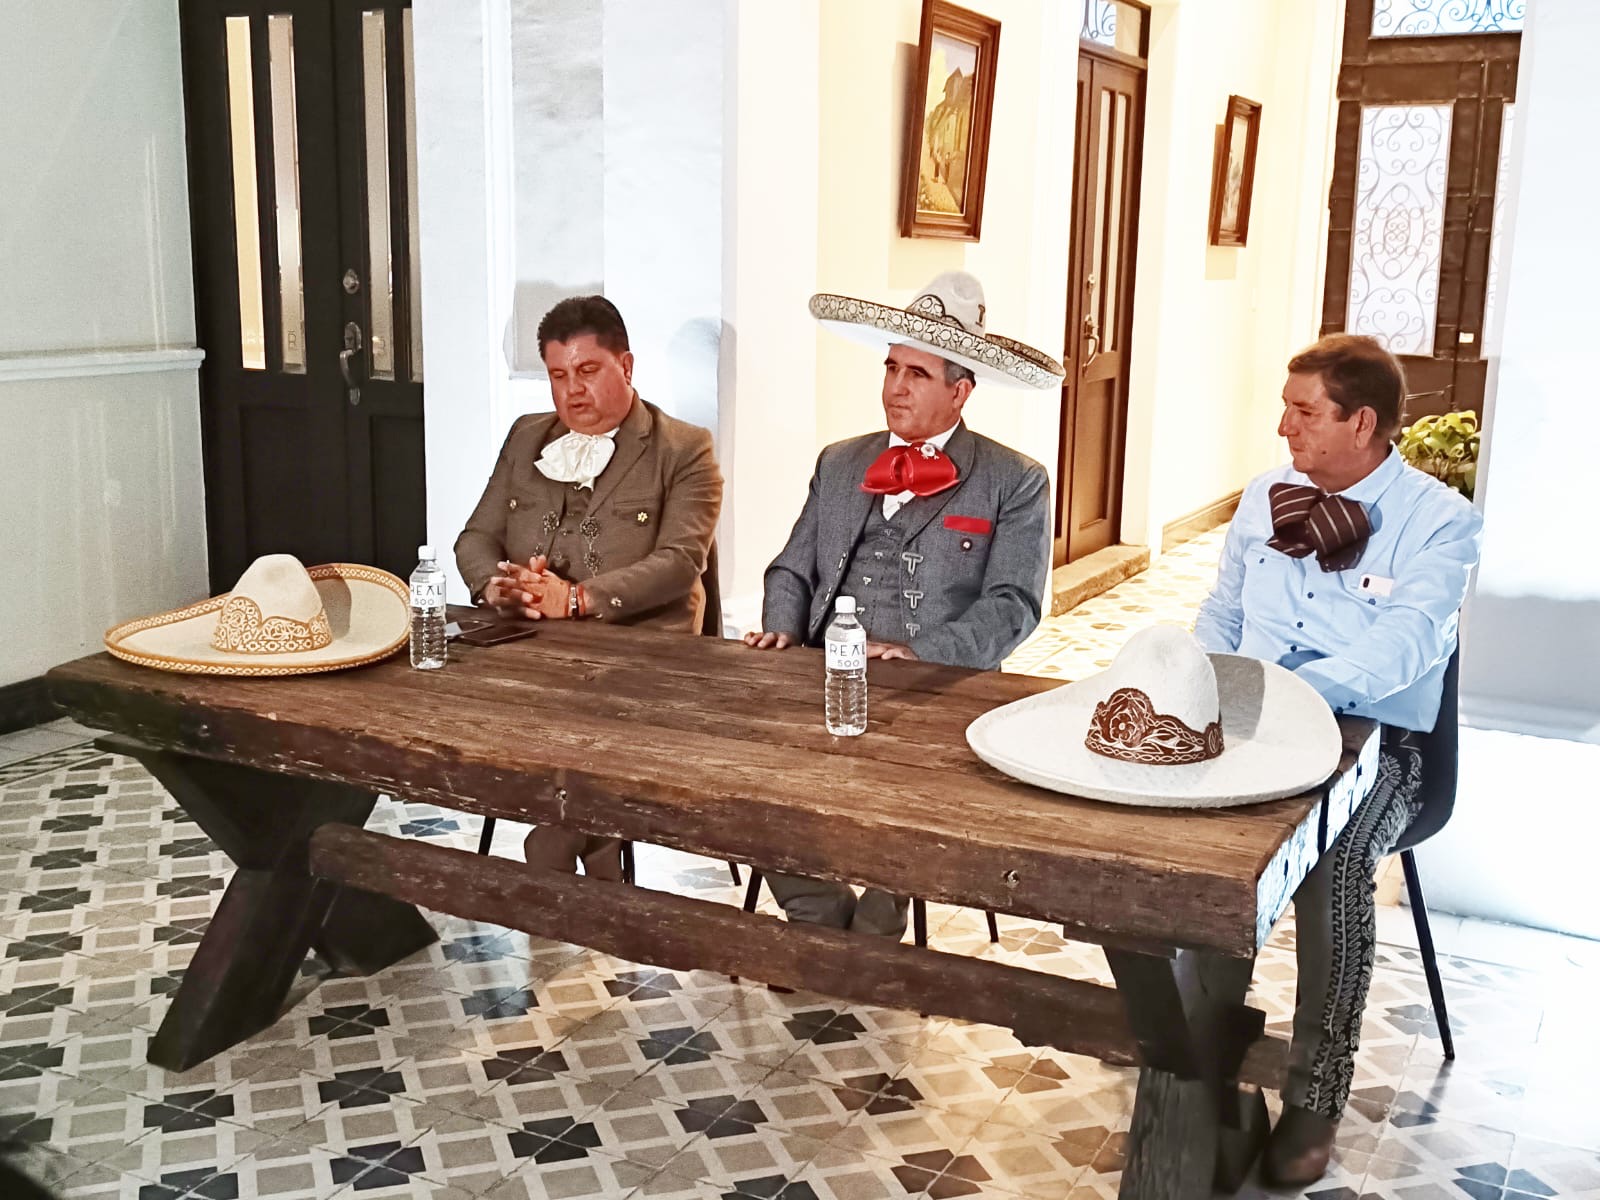 Muchas cosas positivas salieron de la visita a Puebla para Marcos Ordoñez.